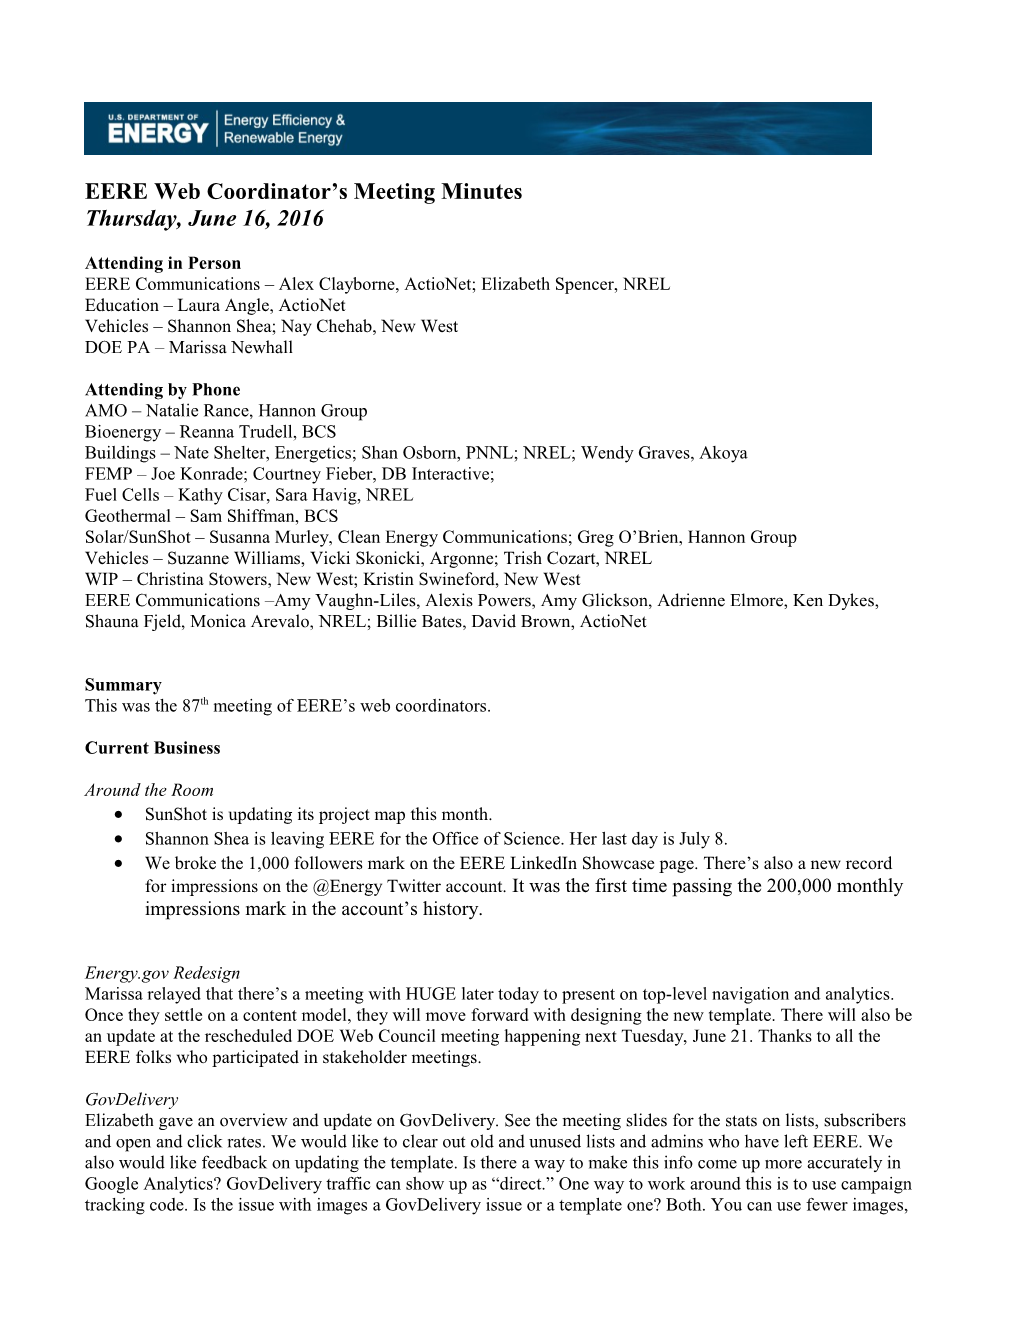 EERE Web Coordinators Meeting Minutes: June 2016